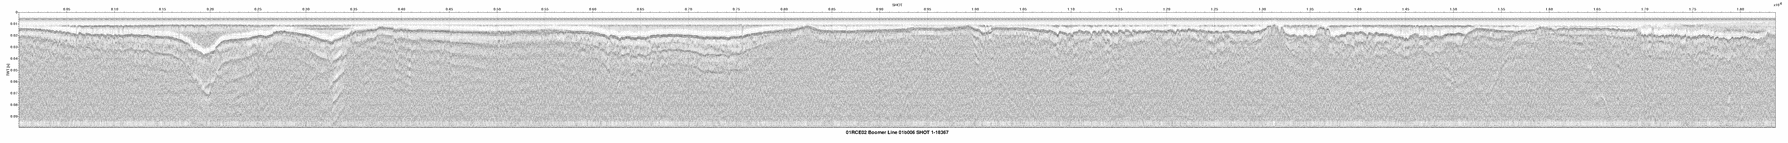 01RCE02-01b006 seismic profile thumbnail